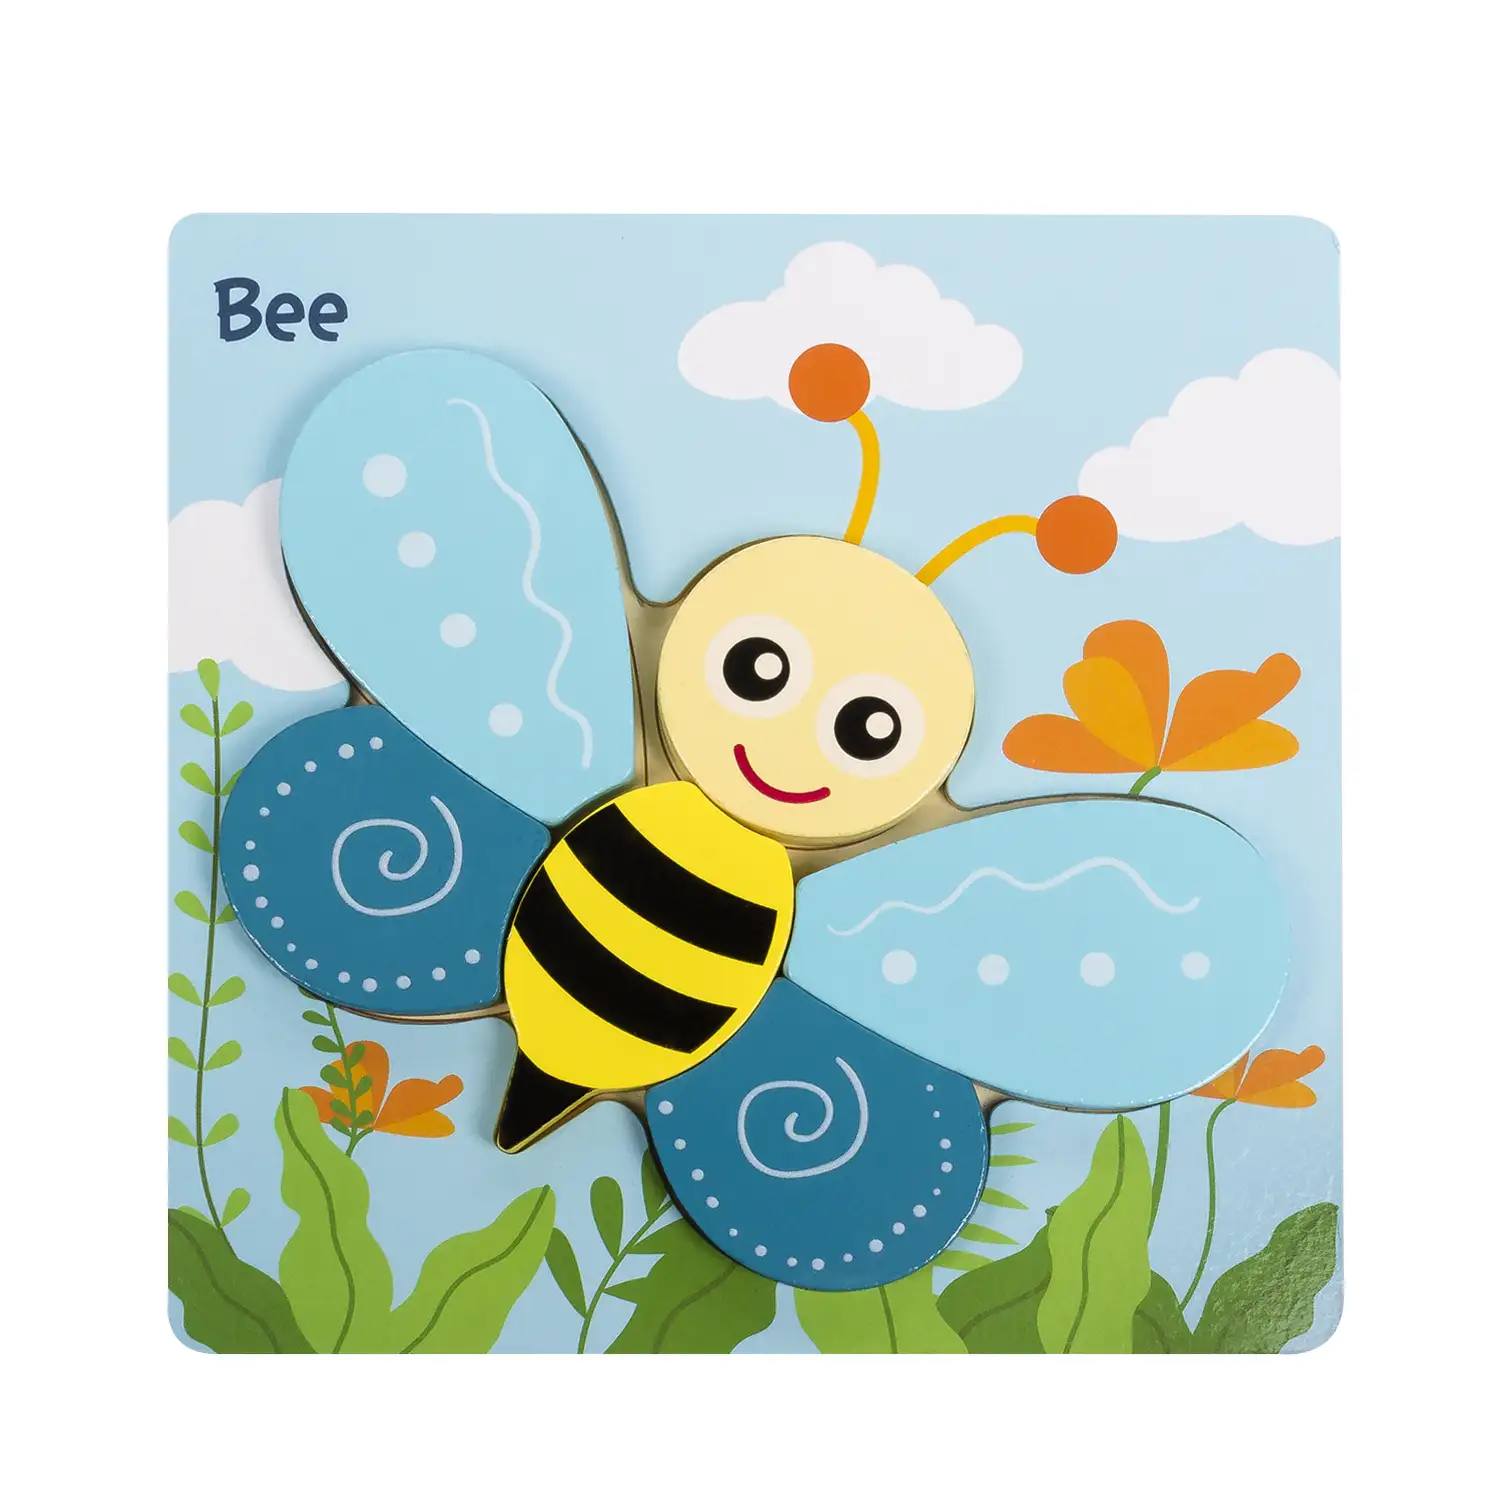 Puzle de madera para niños, de 6 piezas. Diseño abeja.